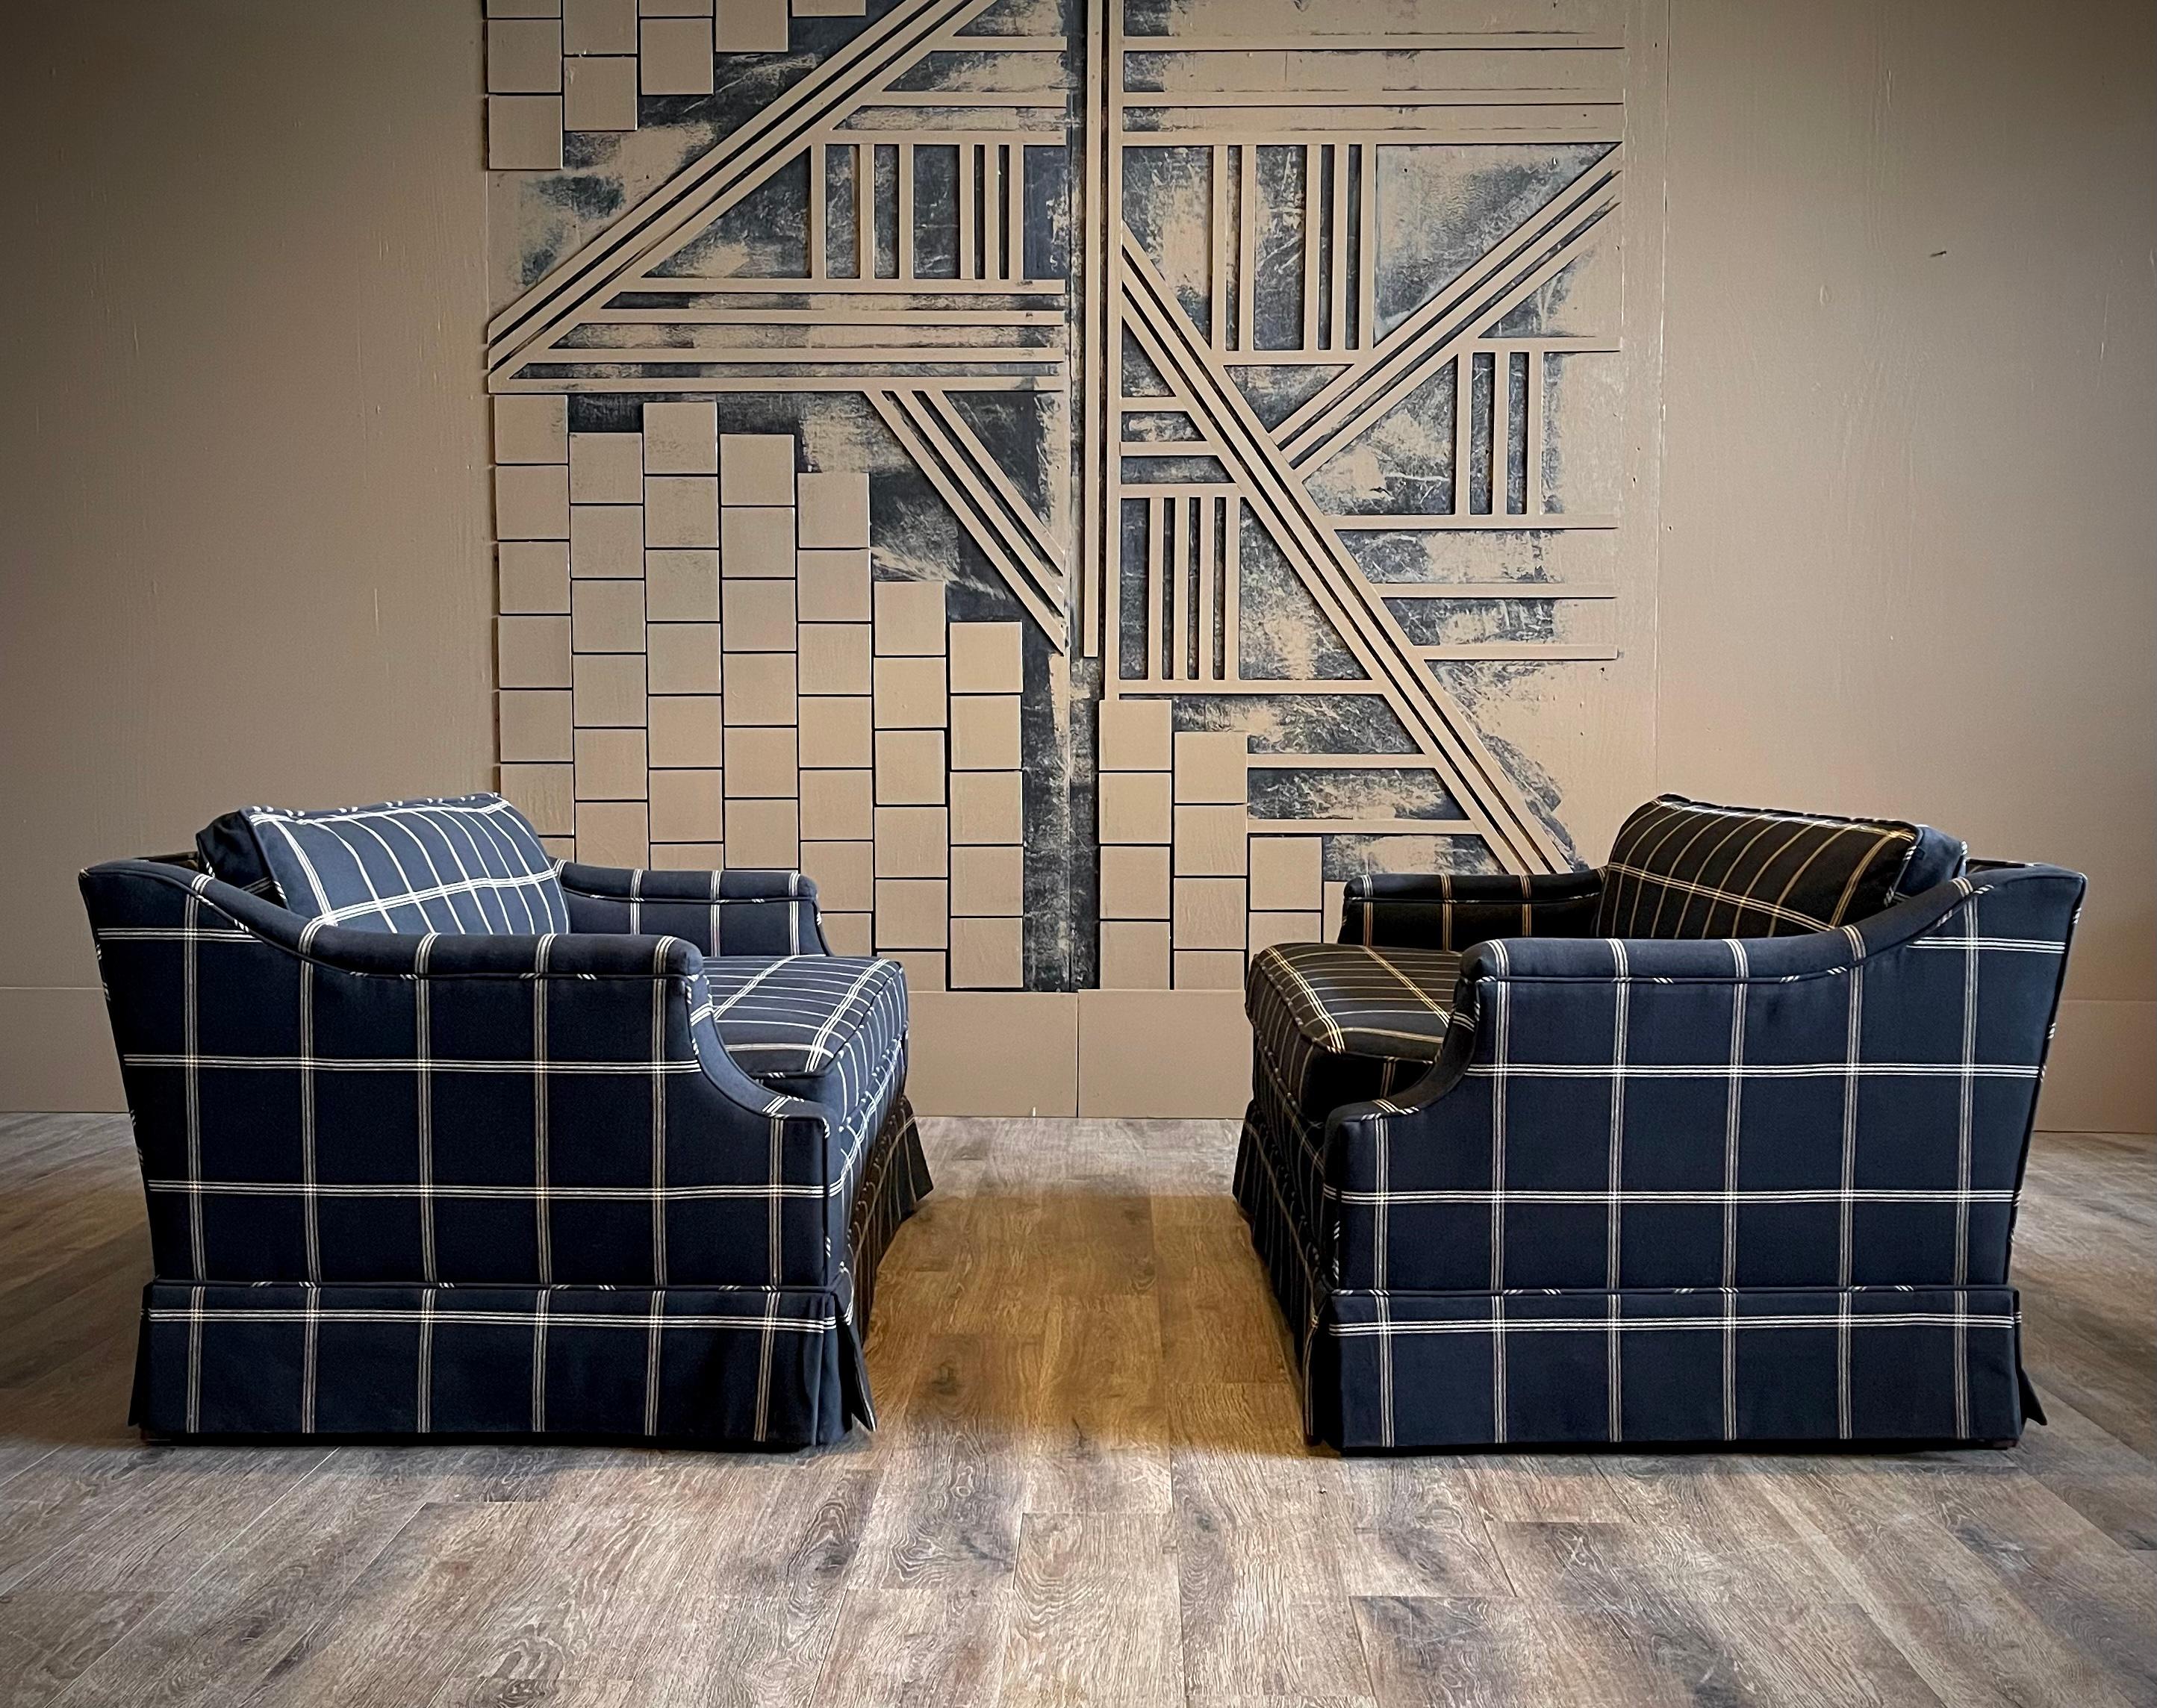 Peppen Sie Ihren Wohnraum auf mit diesem atemberaubenden Sofa-Paar aus der Mitte des Jahrhunderts, das fachmännisch mit fabelhaftem schwarzem Baumwollstoff für Fensterscheiben neu gepolstert wurde. Jeder Sessel greift die ikonischen Designelemente